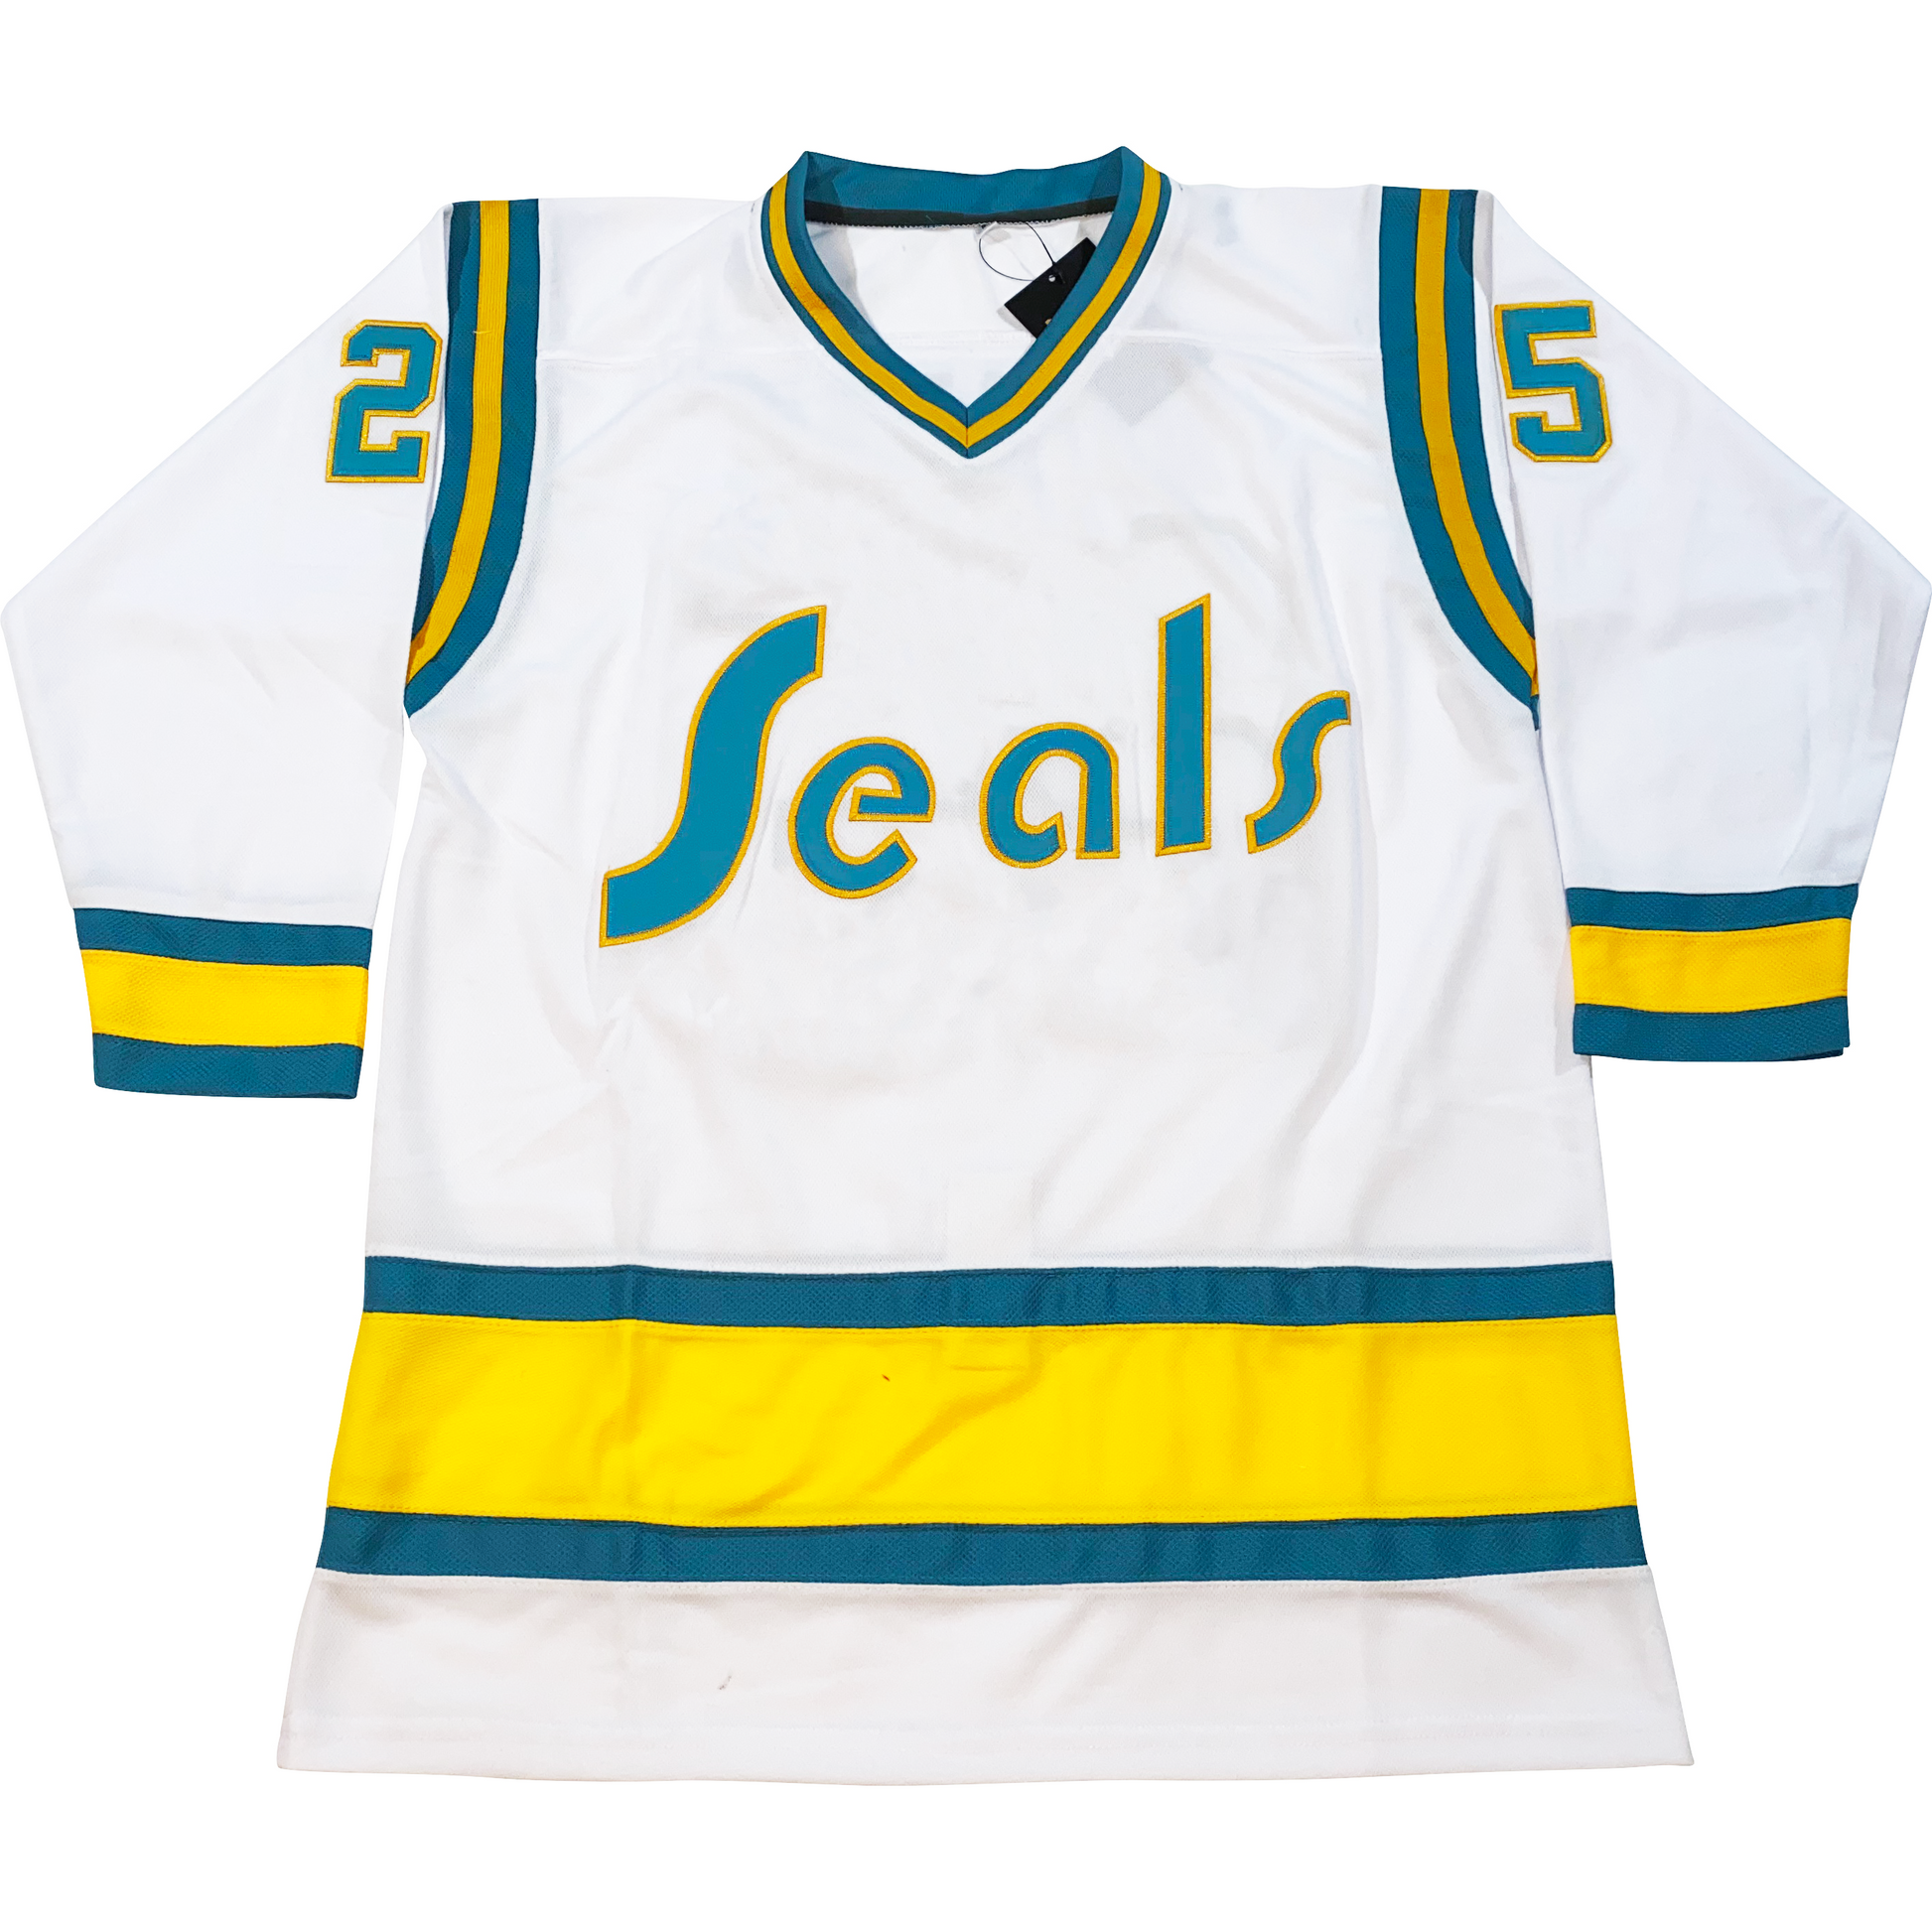 California Golden Seals Oakland Retro Vintage Hockey Team T Shirt